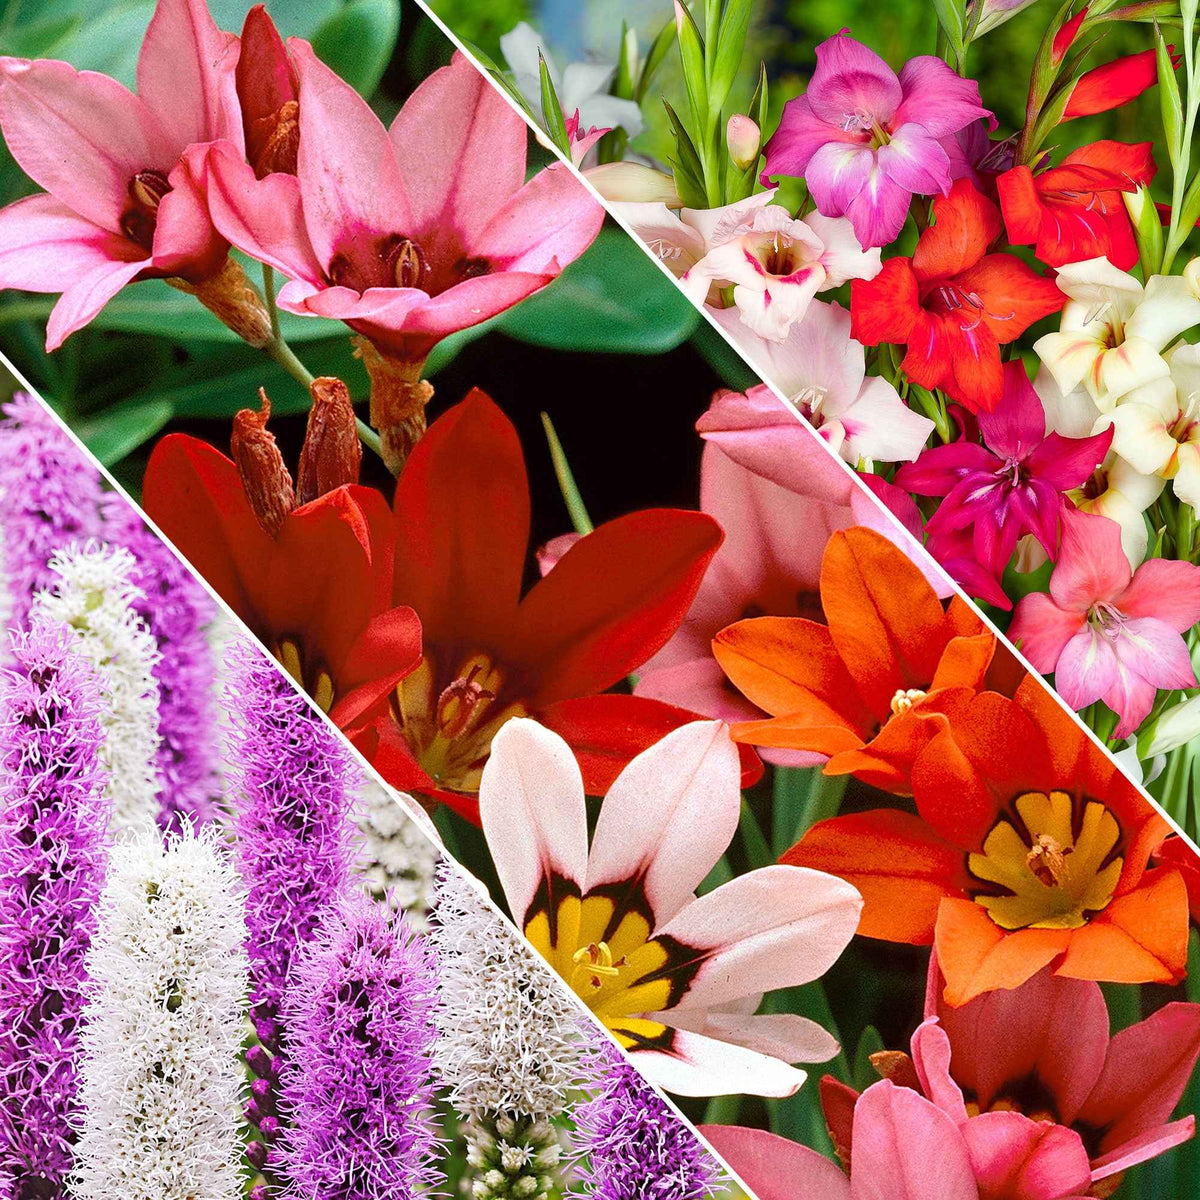 50 Bulbes de fleurs For Bees & Butterflies en mélange - Gladiolus nanus, sparaxis, liatris spicata - Plantes